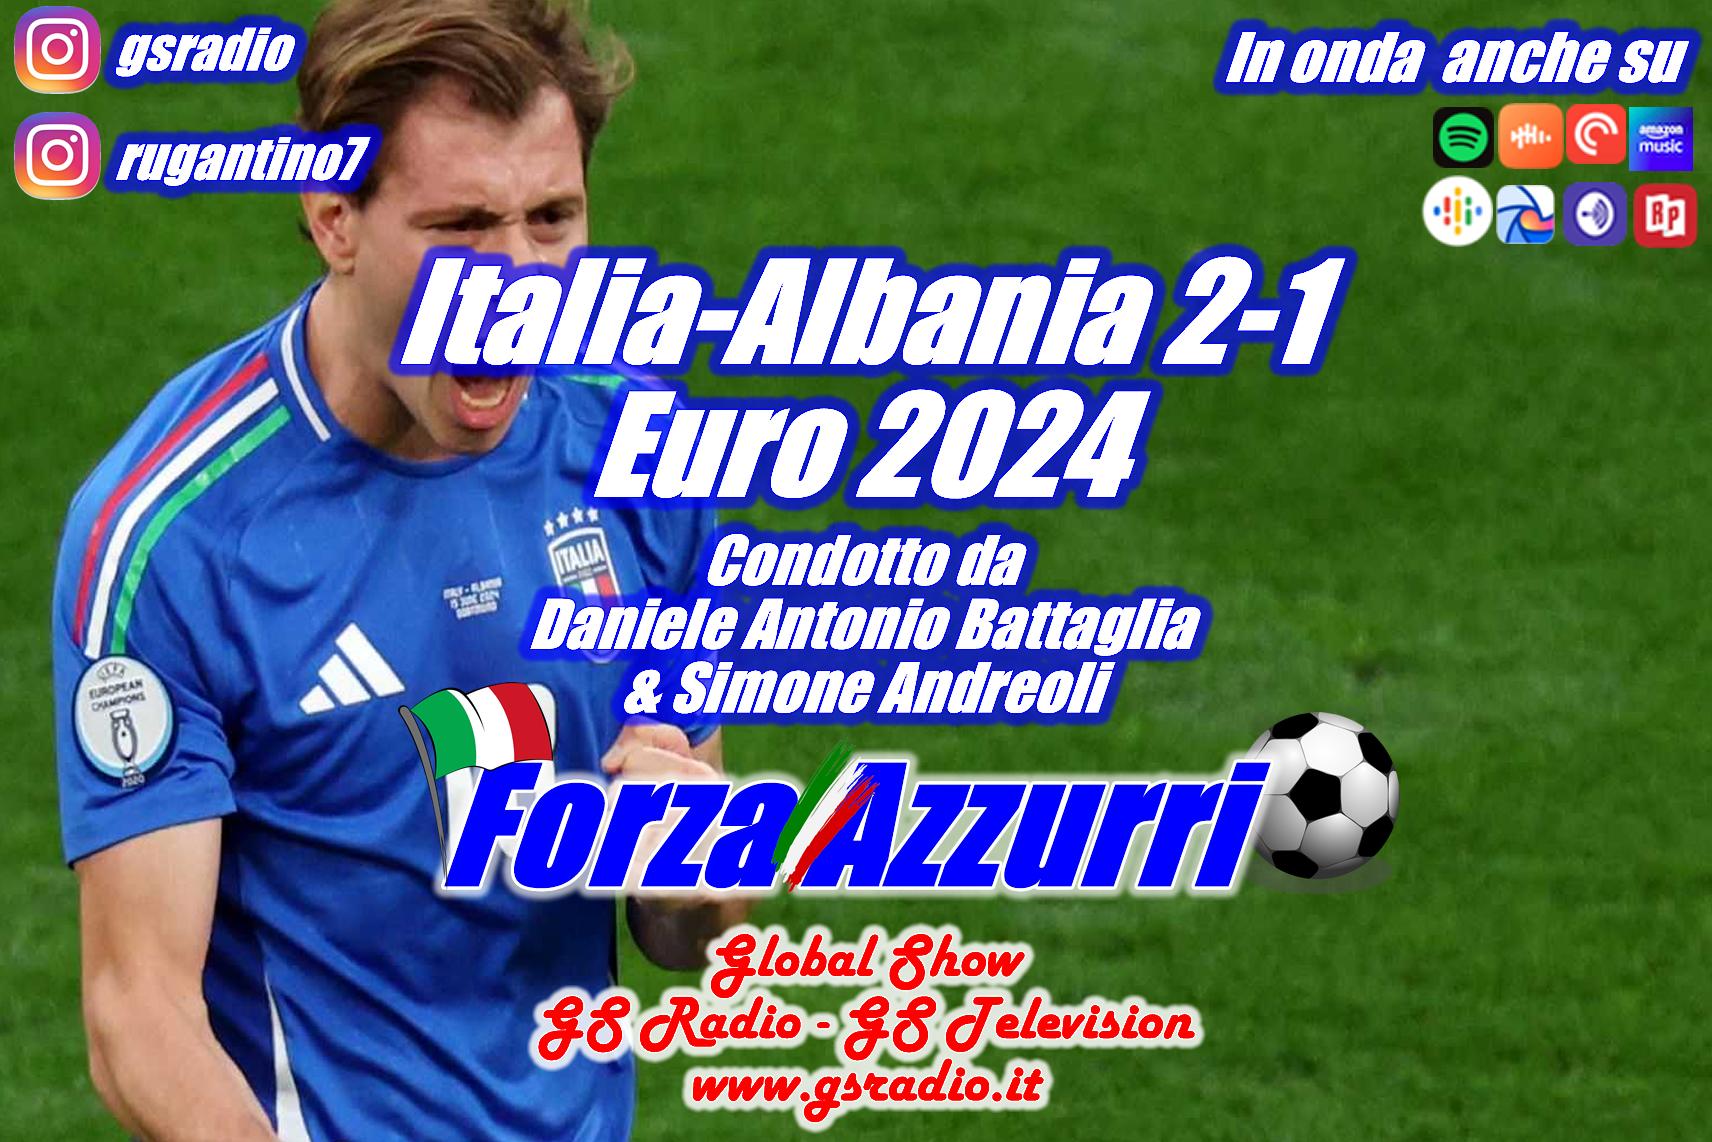 4 - Italia-Albania Euro 2024